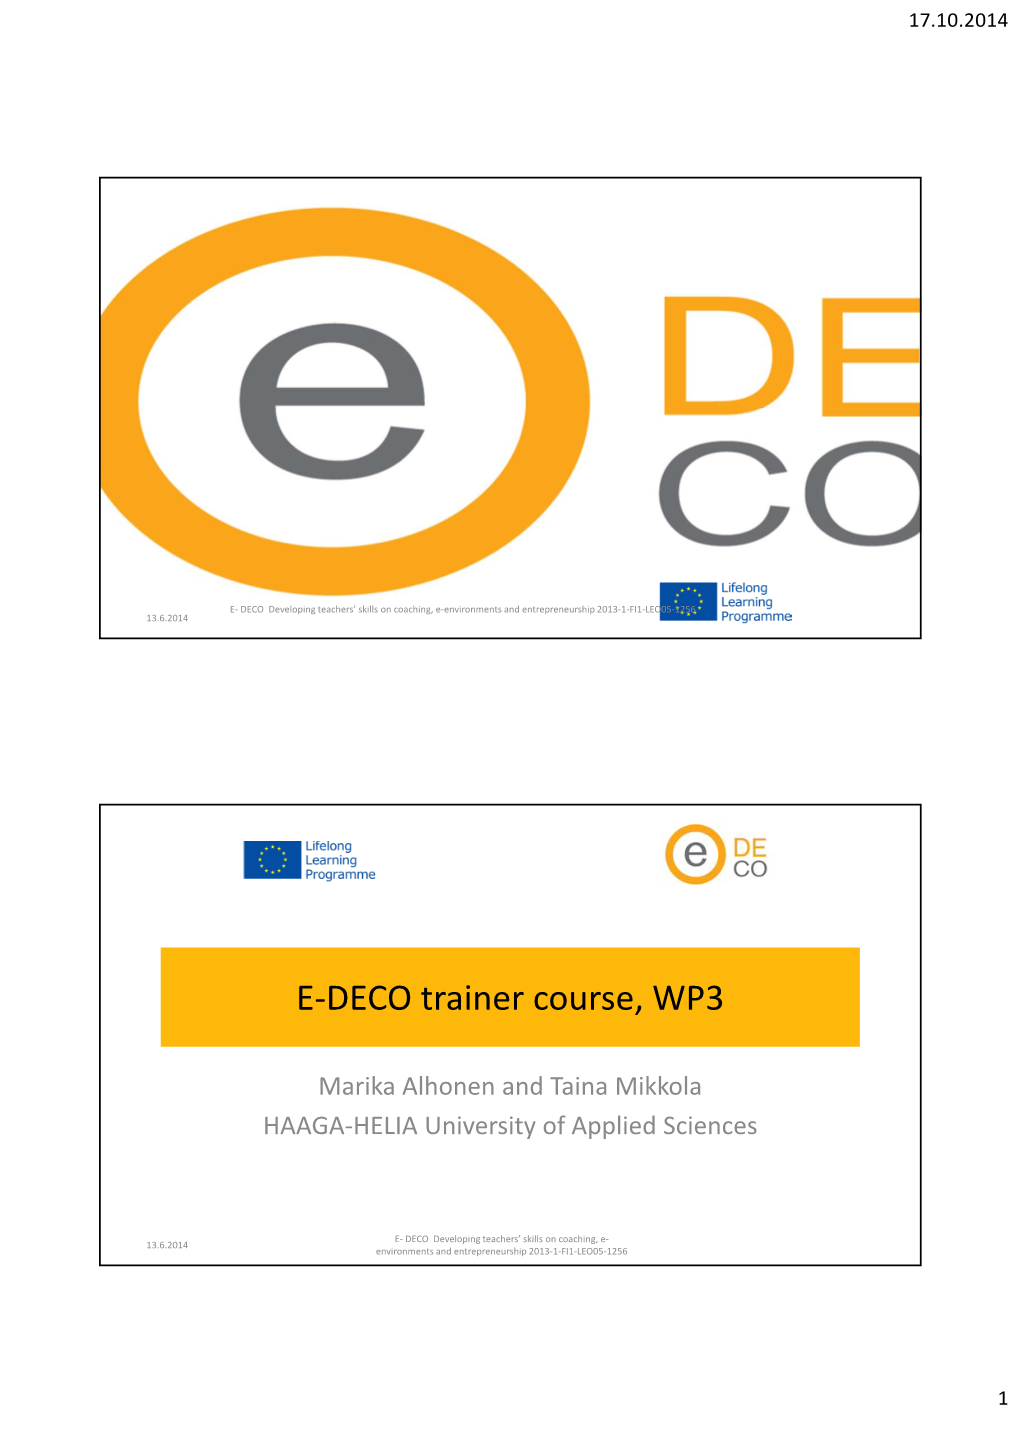 E-DECO Trainer Course